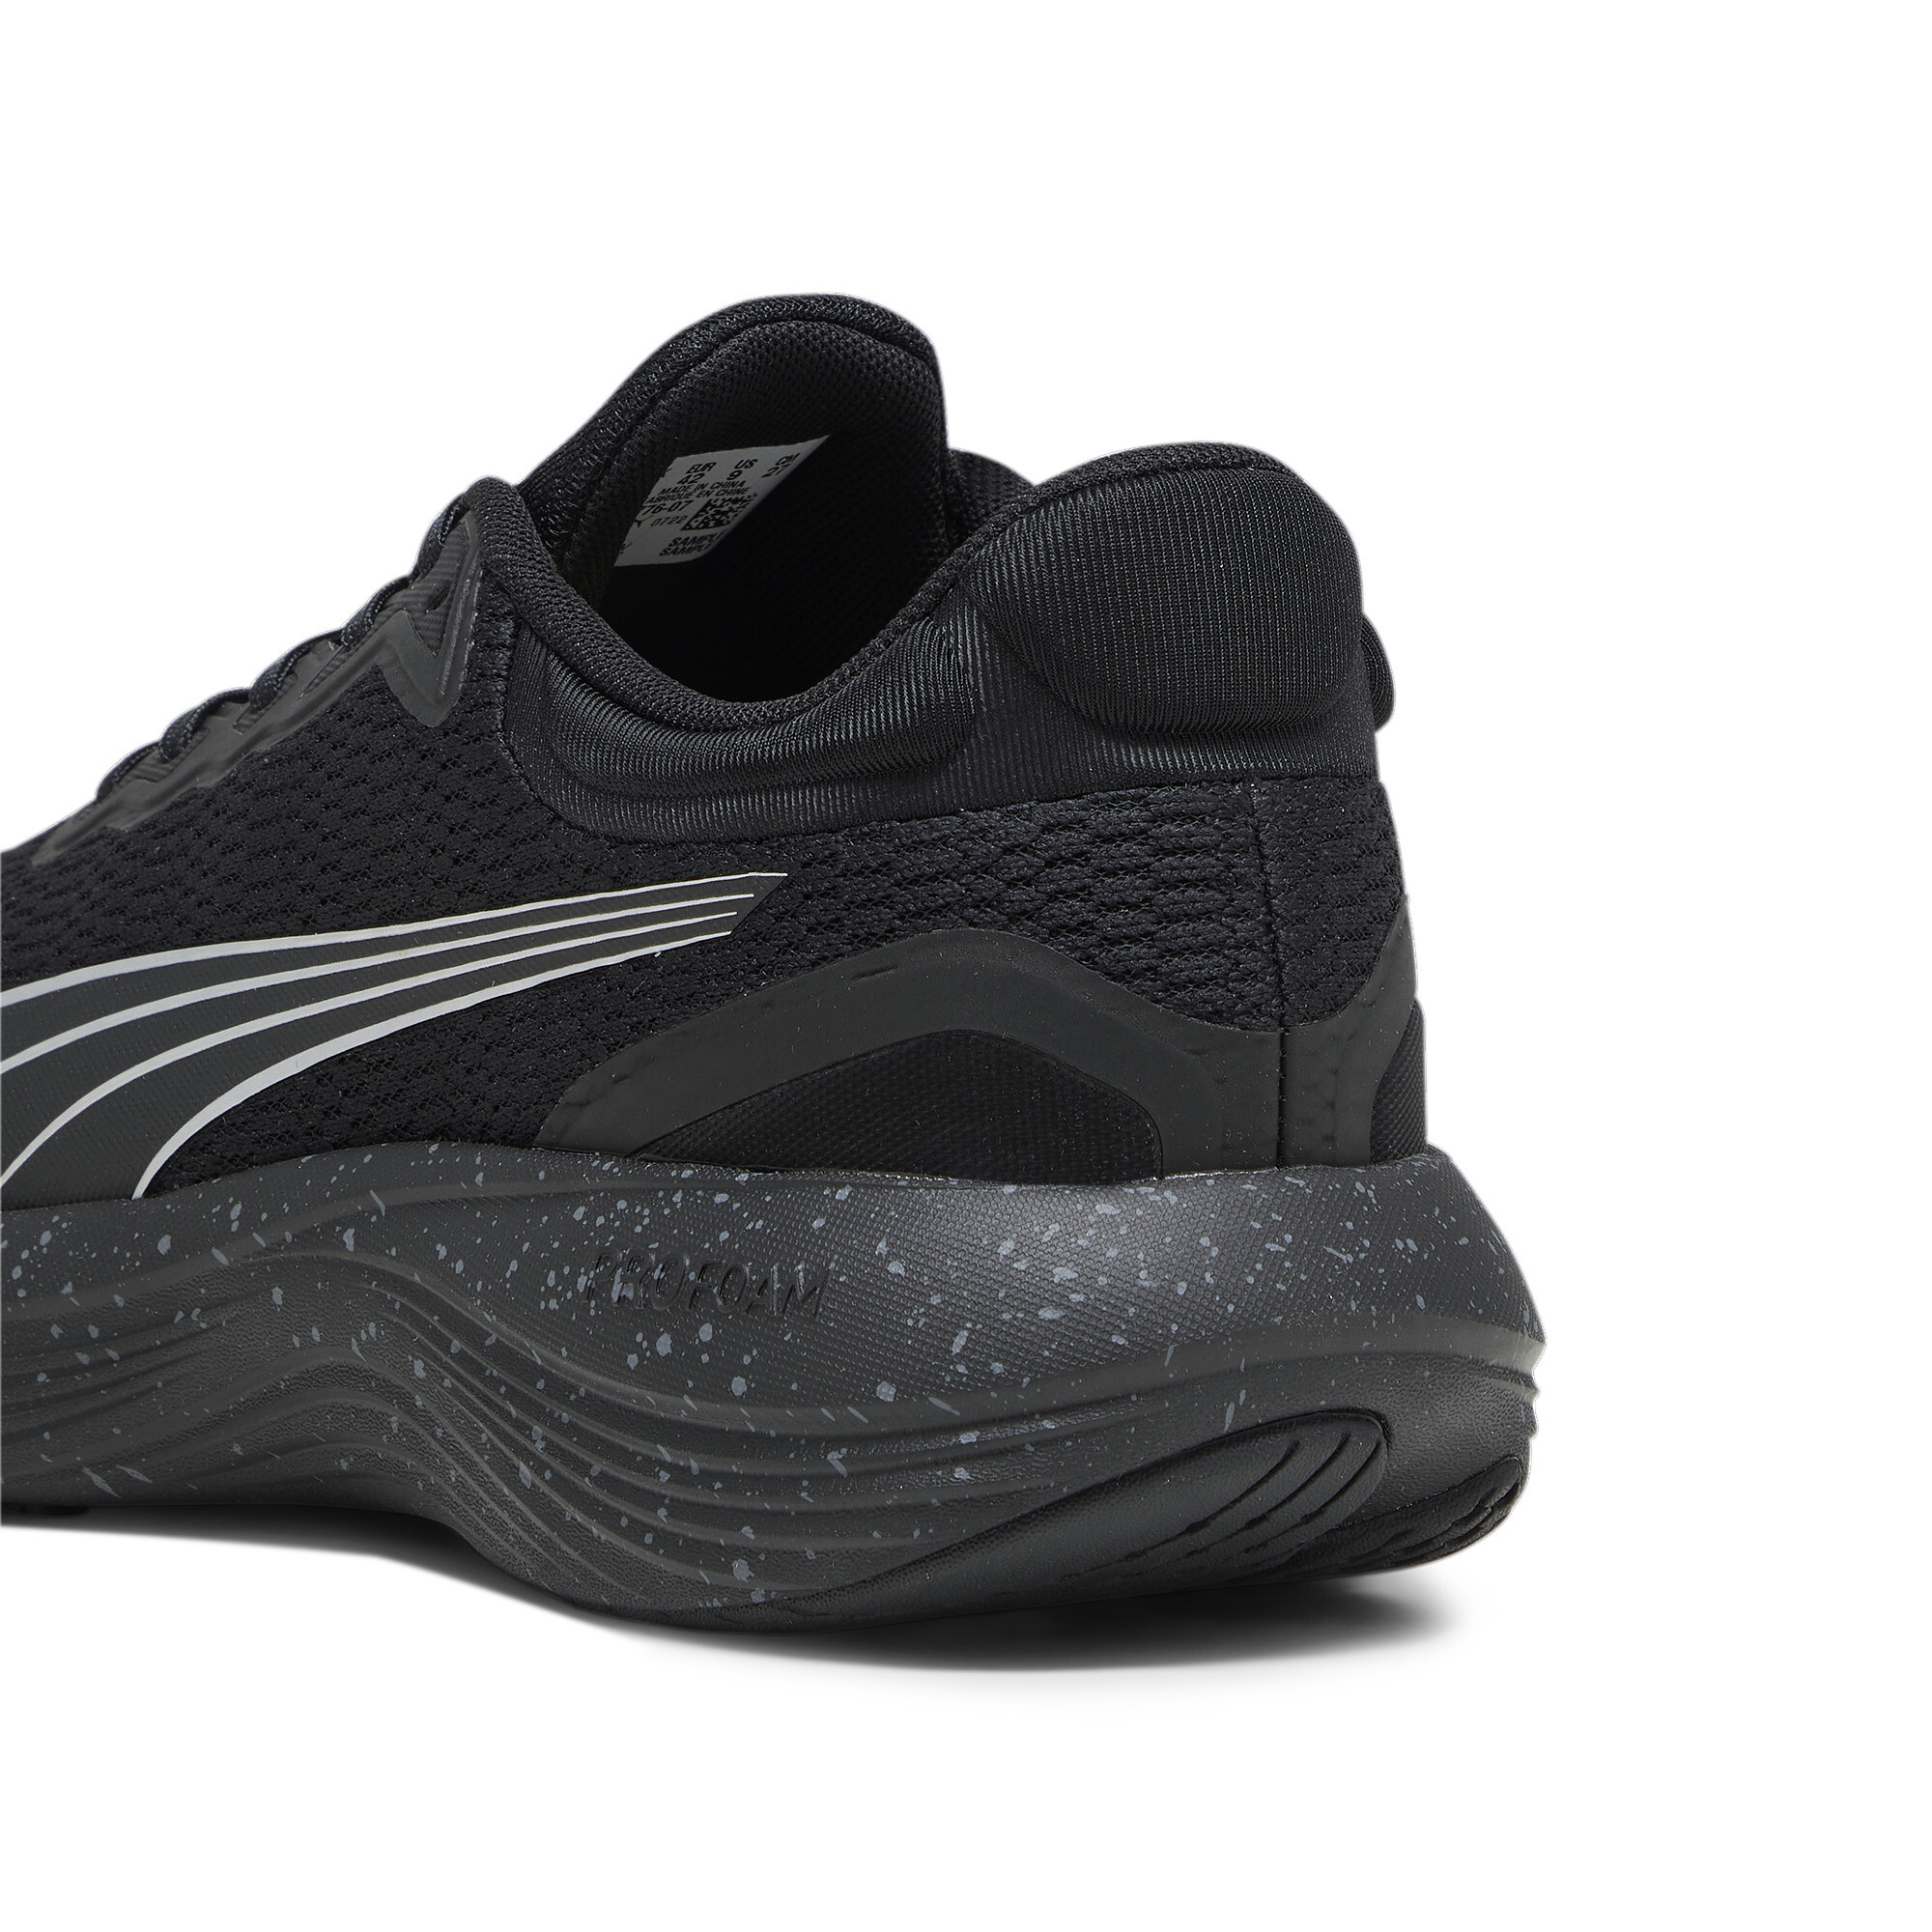 Men's PUMA Scend Pro Running Shoes In Black, Size EU 38.5